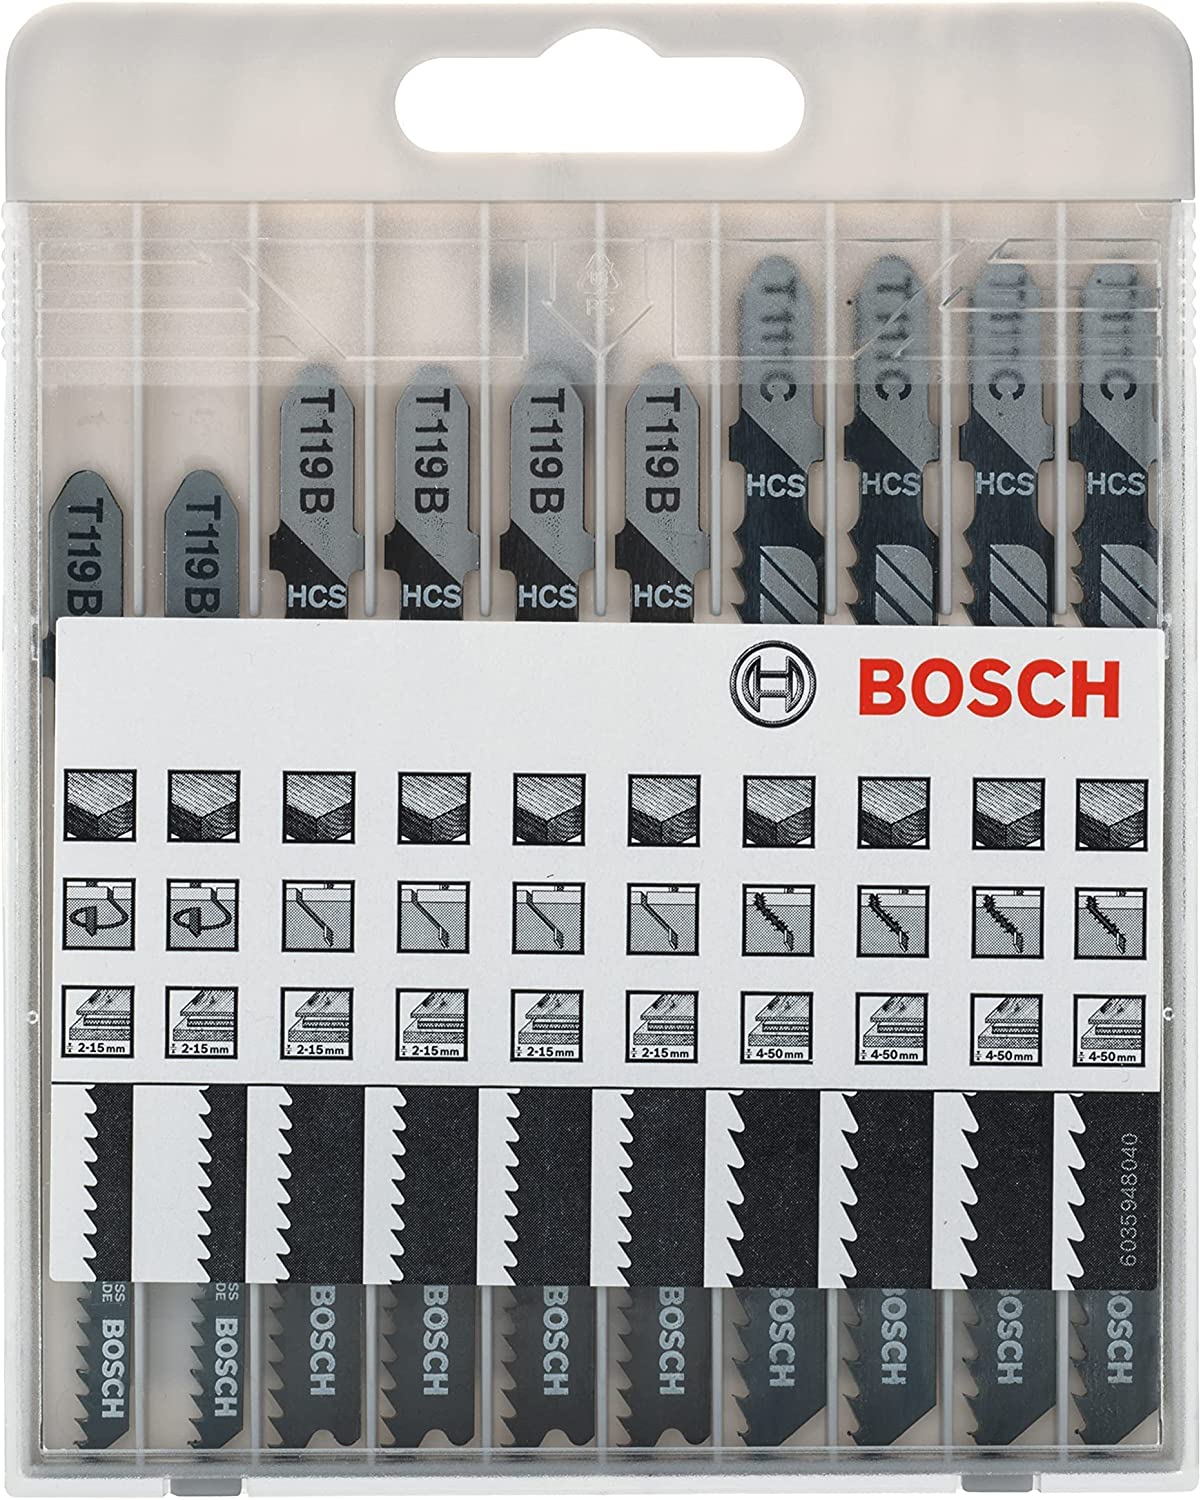 Bild zu Bosch Professional 10tlg. Stichsägeblatt Set für 6,28€ (VG: 11€)